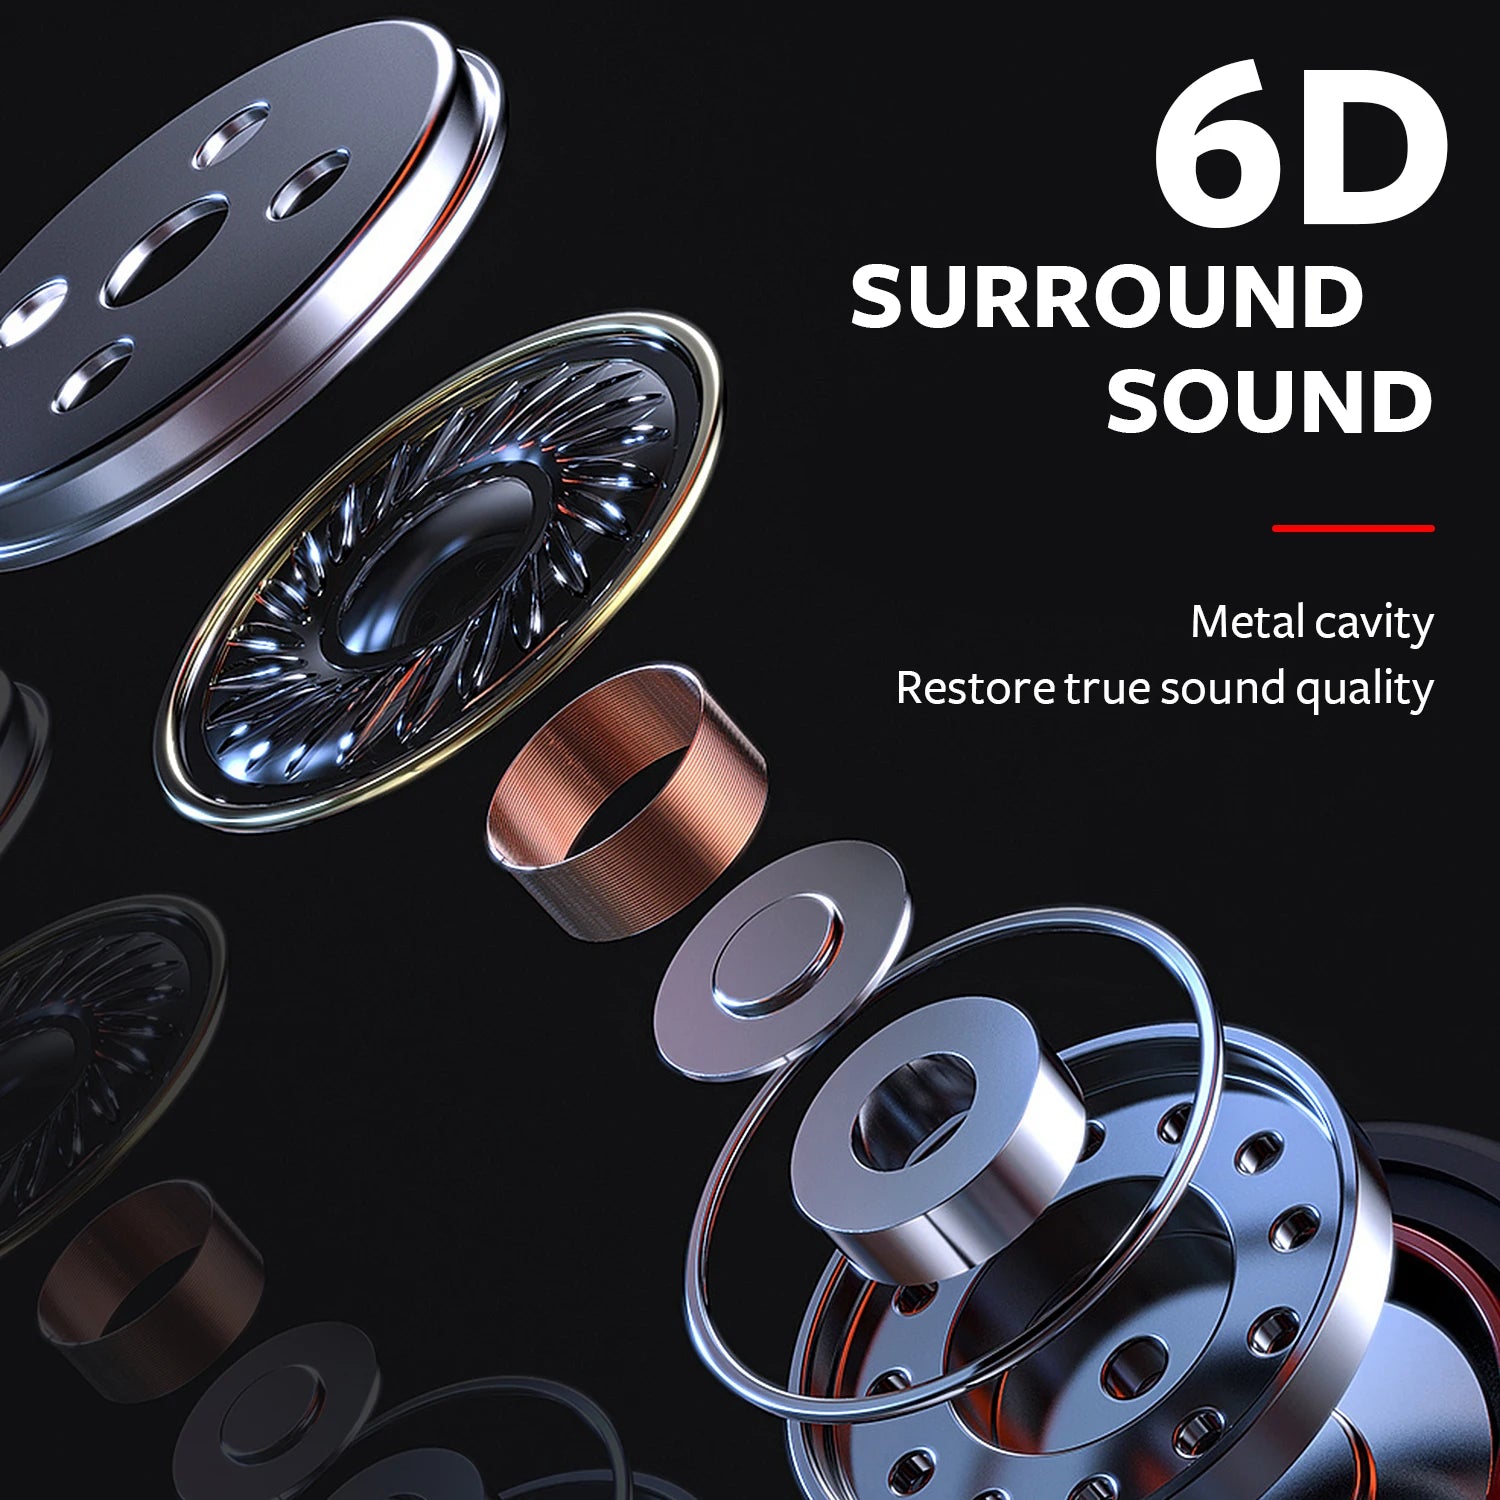 Fones de Ouvido Intra-auriculares HifiXtreme: Qualidade Sonora Superior em um Design Compacto - IA De Ofertas